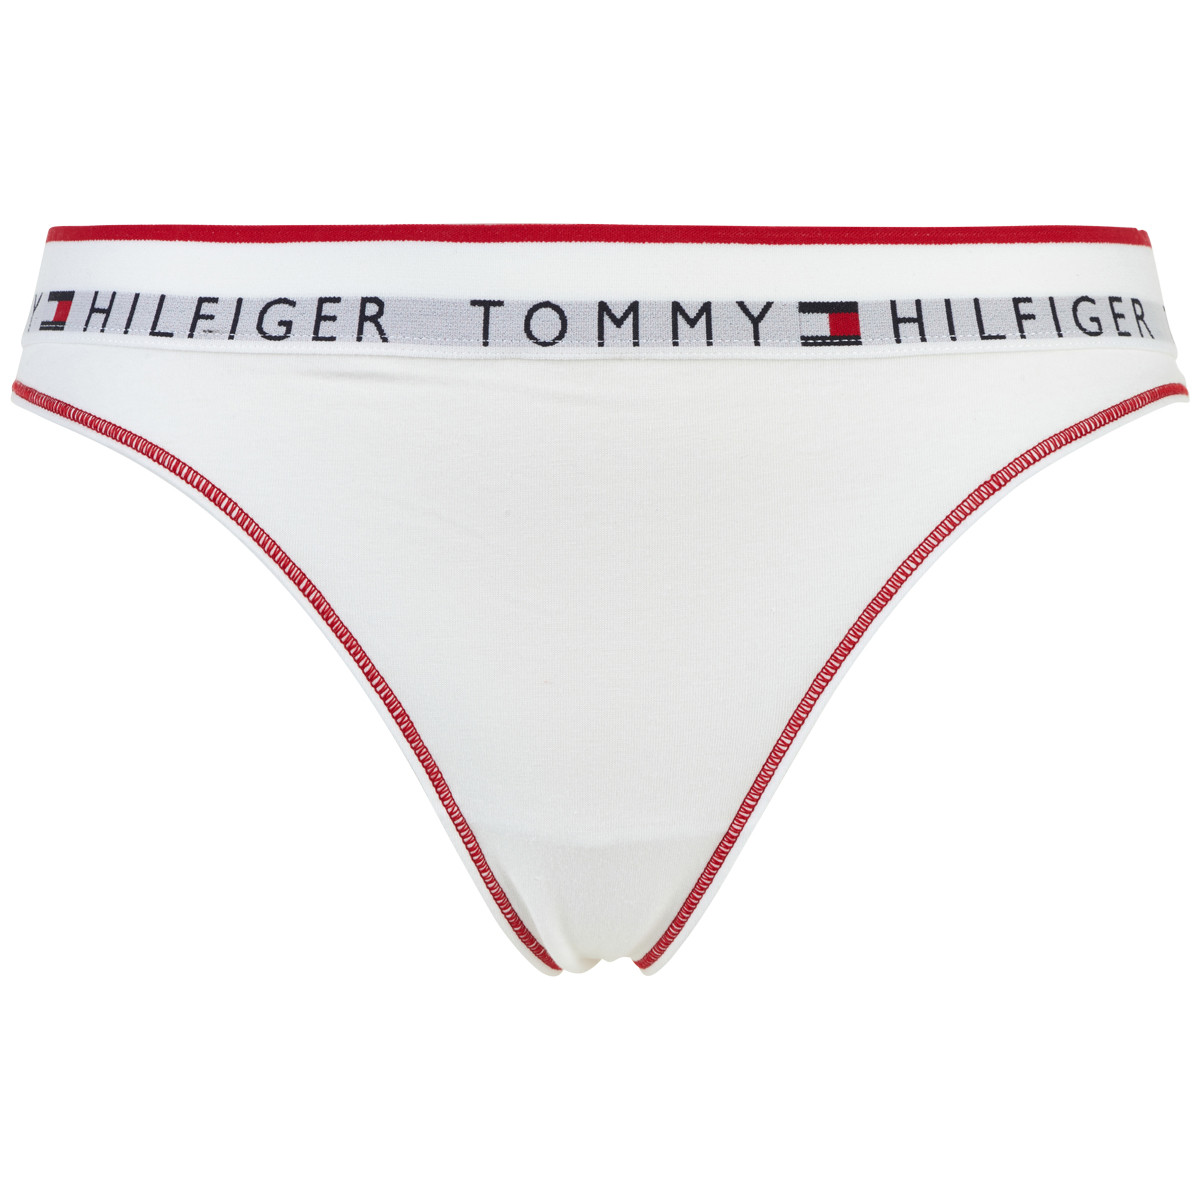 TOMMY HILFIGER LINGERI STRING W02813 YBR